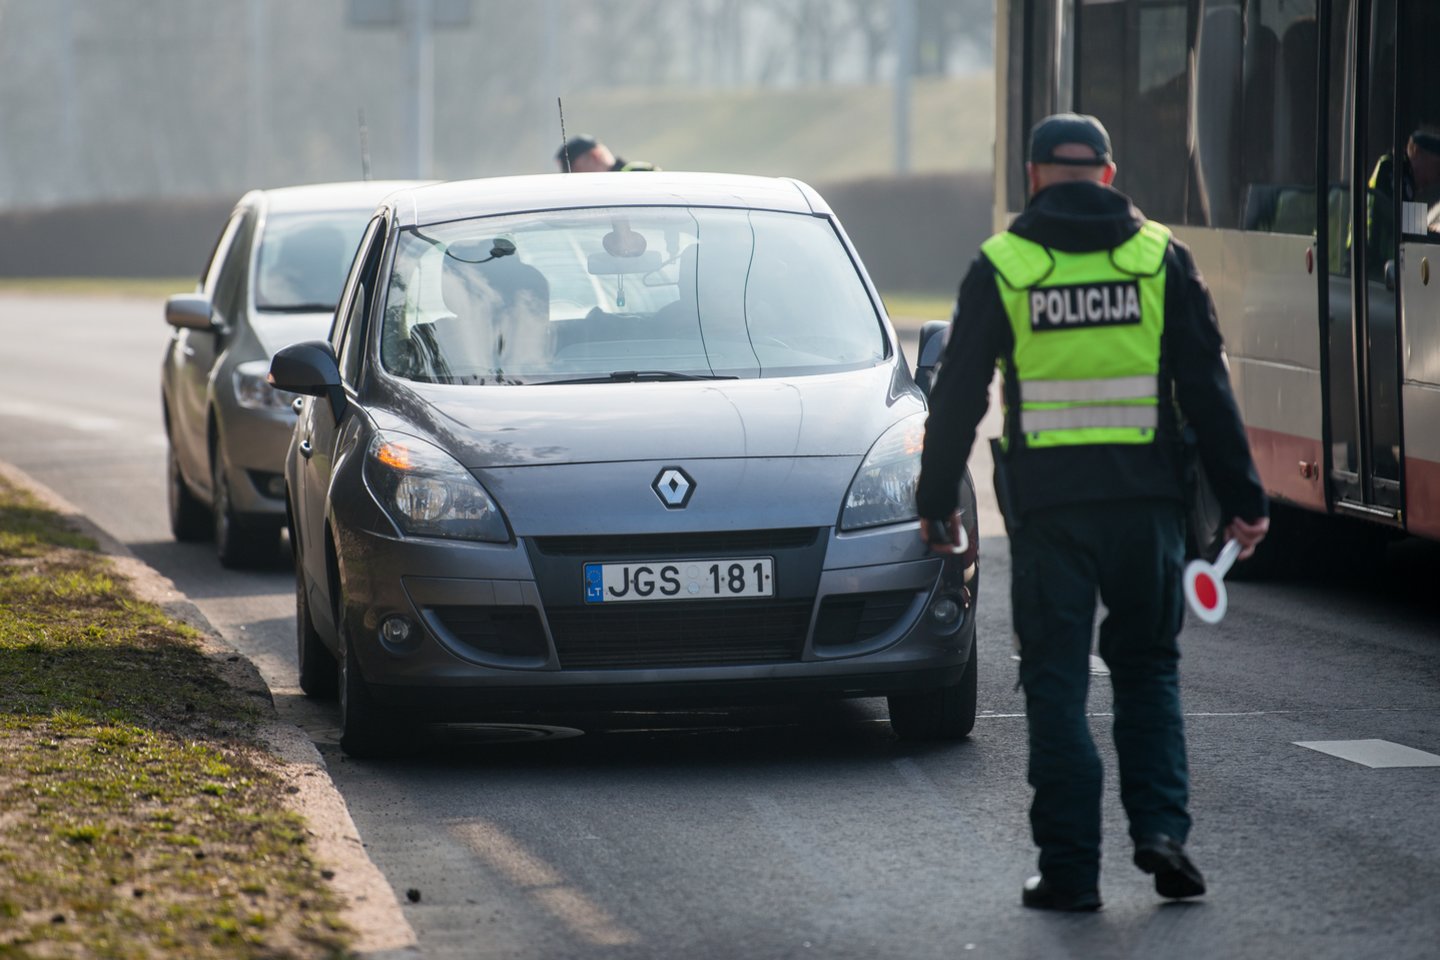 Vilniaus rajone trečiadienį sulaikytas neblaivus automobilį vairavęs sostinės policininkas.<br>J.Stacevičiaus asociatyvi nuotr.